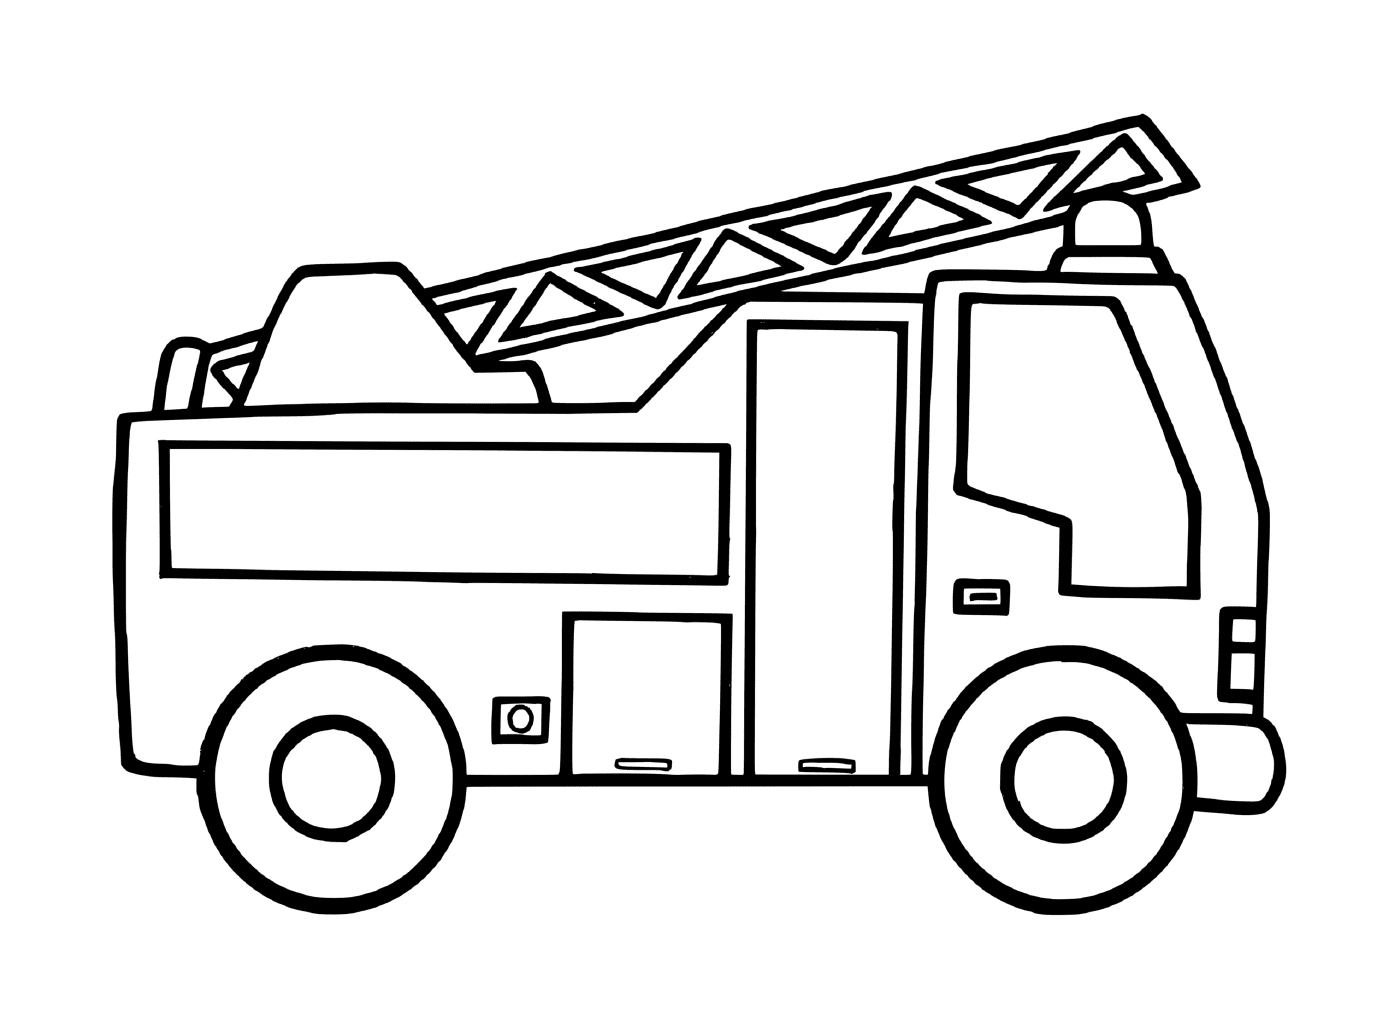  Toy maternal fire truck 